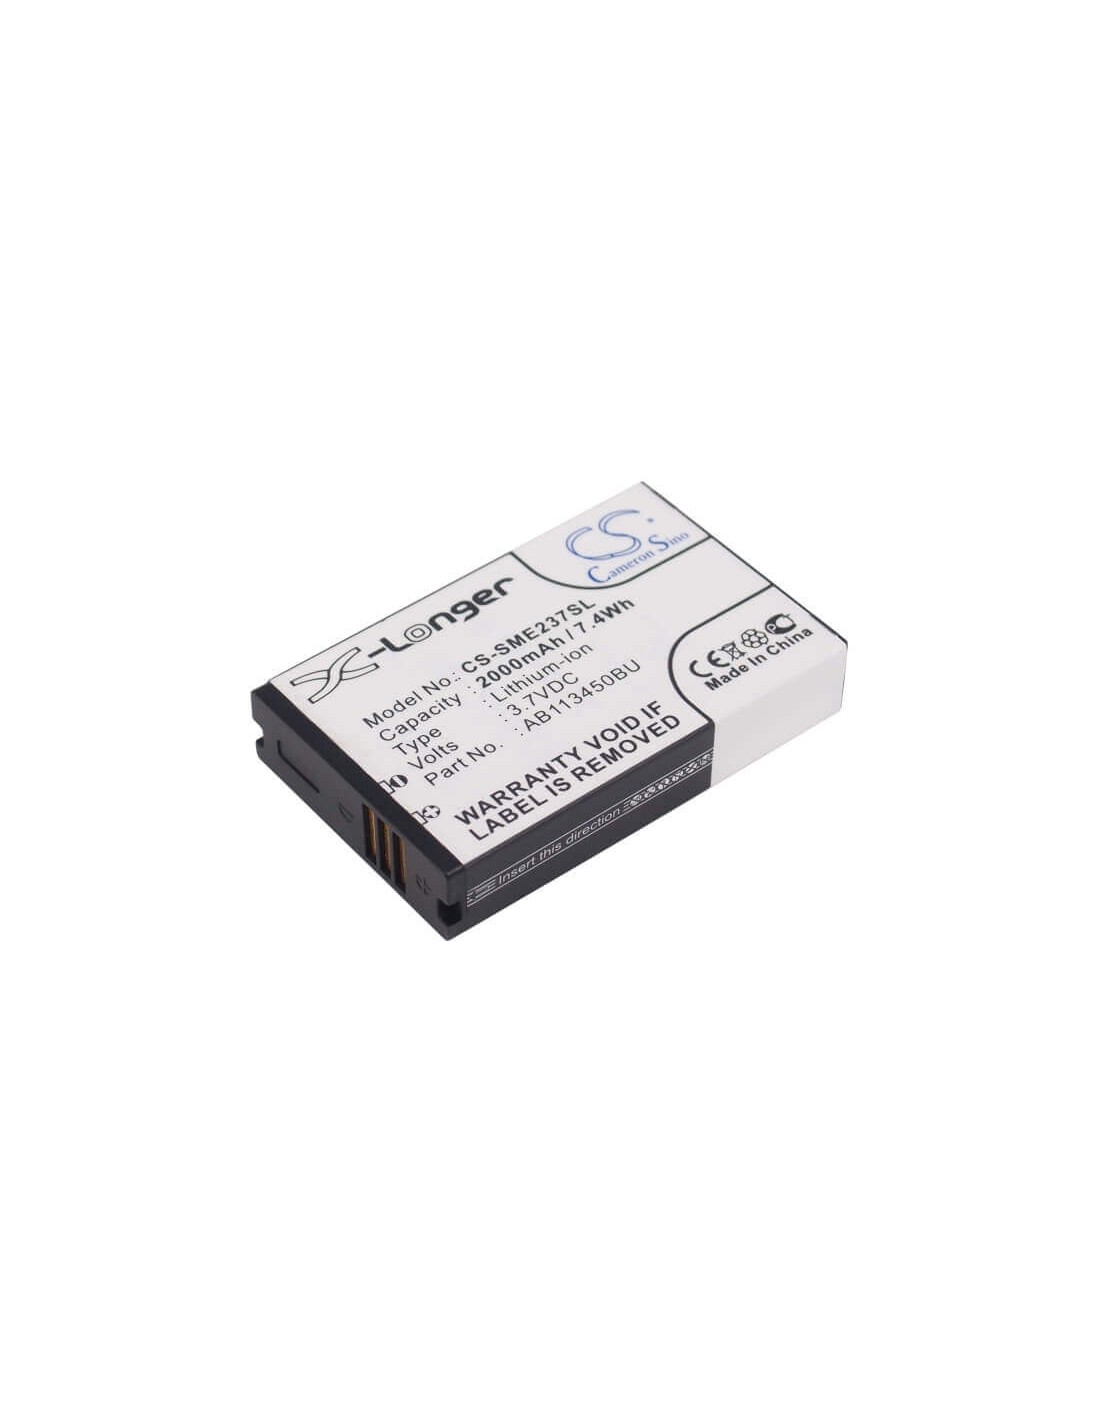 Battery for Samsung GT-E2370, E2370 Solid, Xcover E2370 3.7V, 2000mAh - 7.40Wh